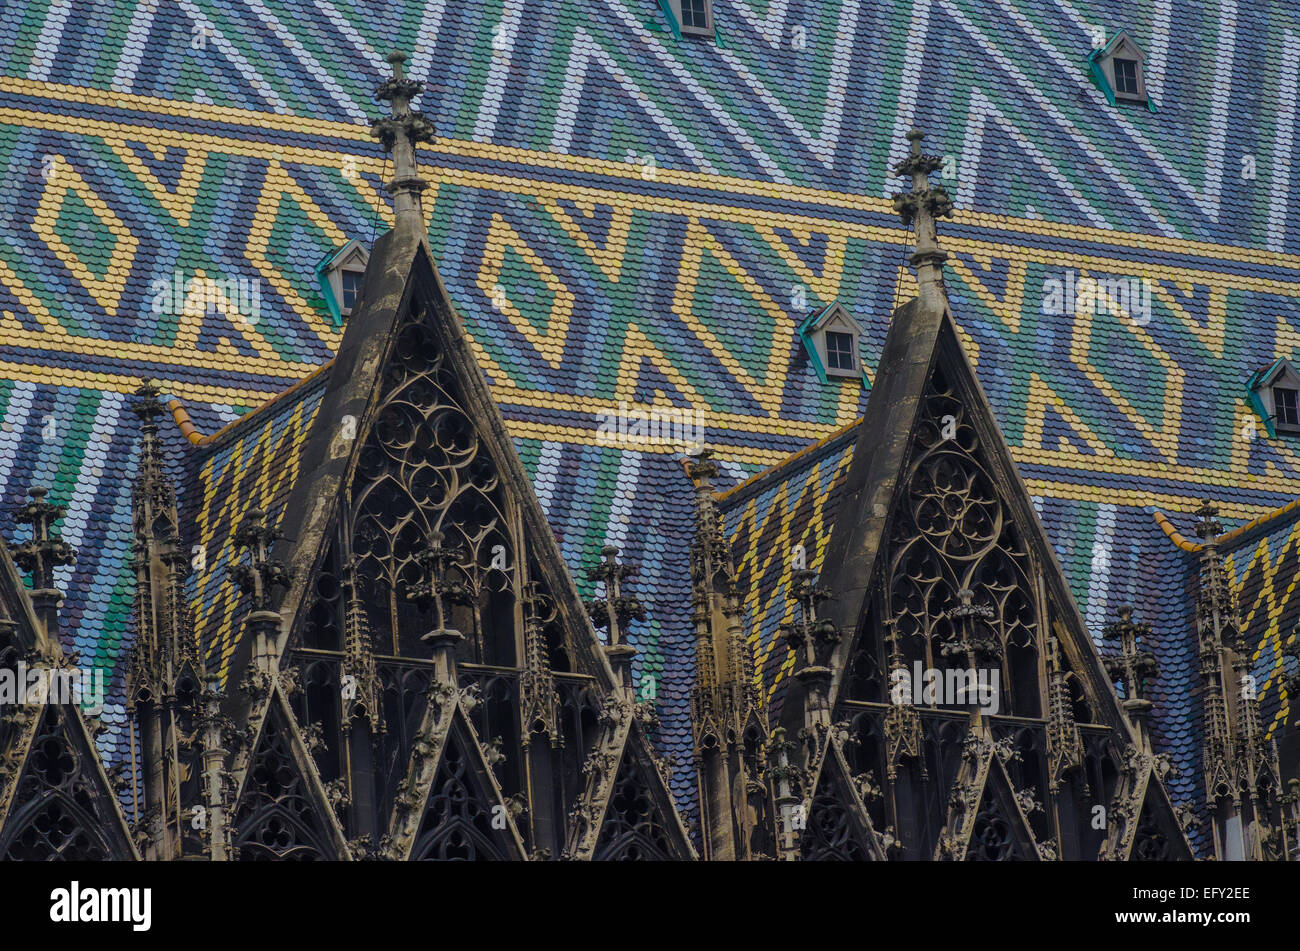 La storica cattedrale di Santo Stefano a Vienna, in Austria è famosa per il suo tetto di abbagliamento dei motivi e dei colori. Foto Stock